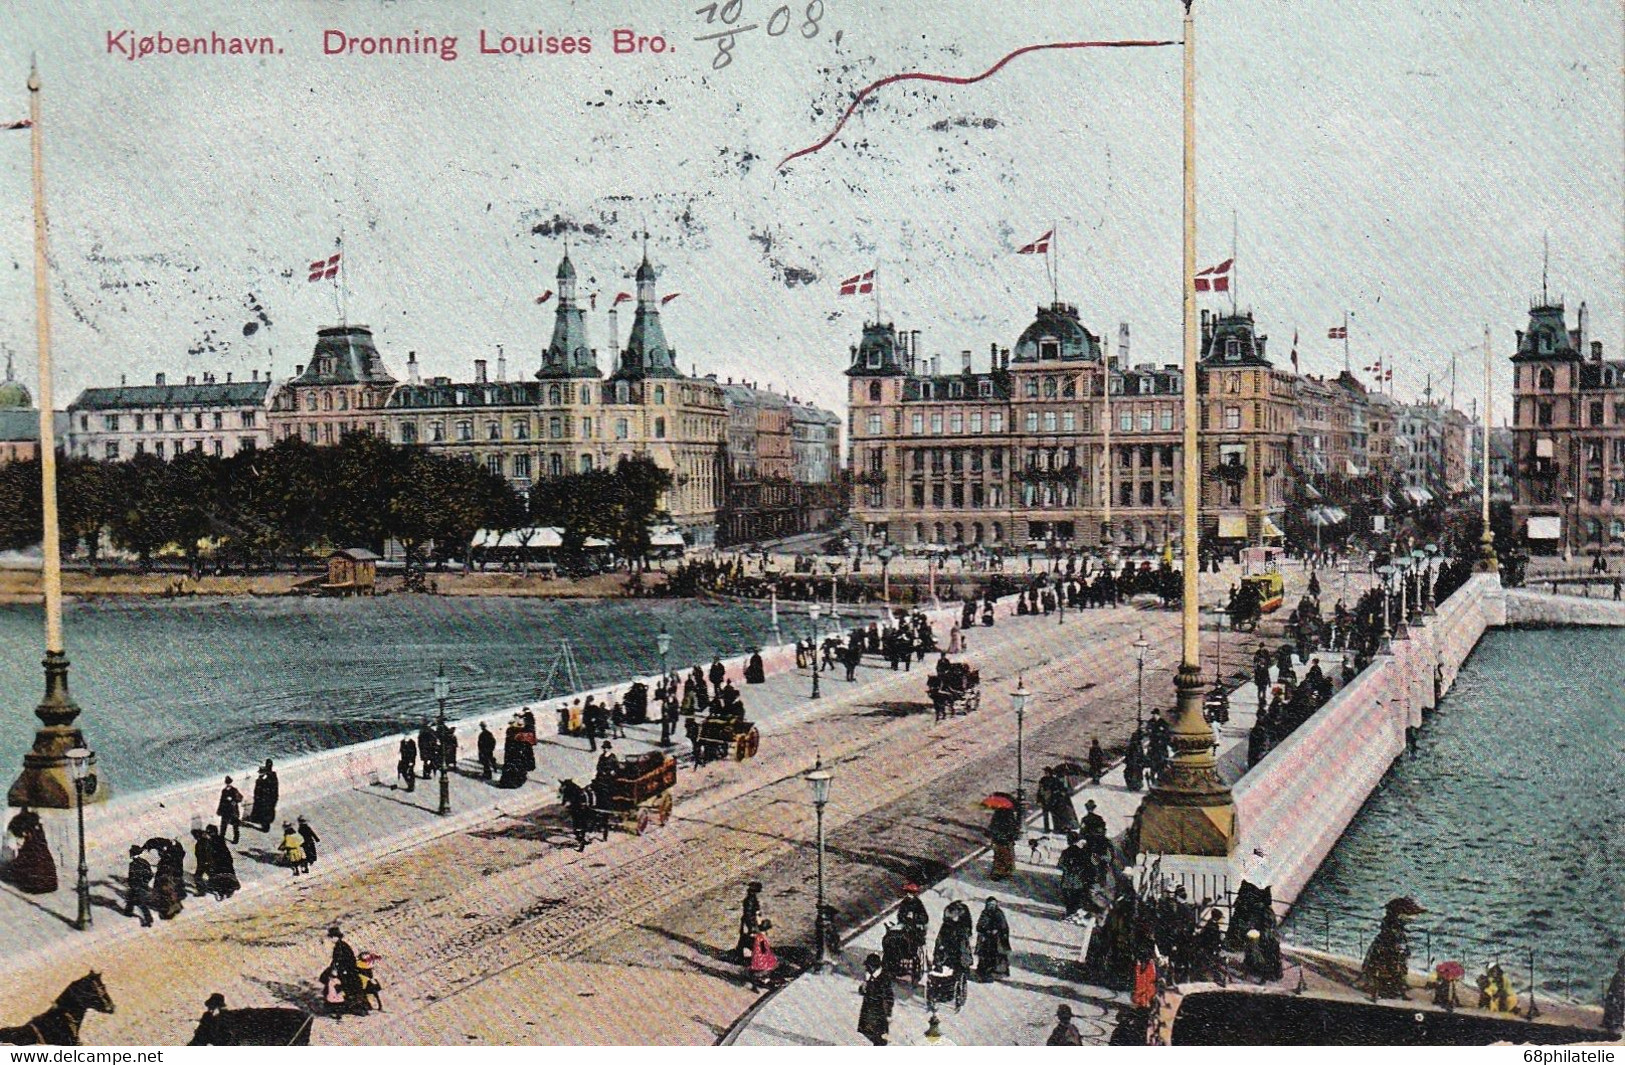 DANEMARK 1908 CARTE POSTALE DE COPENHAGUE - Lettres & Documents